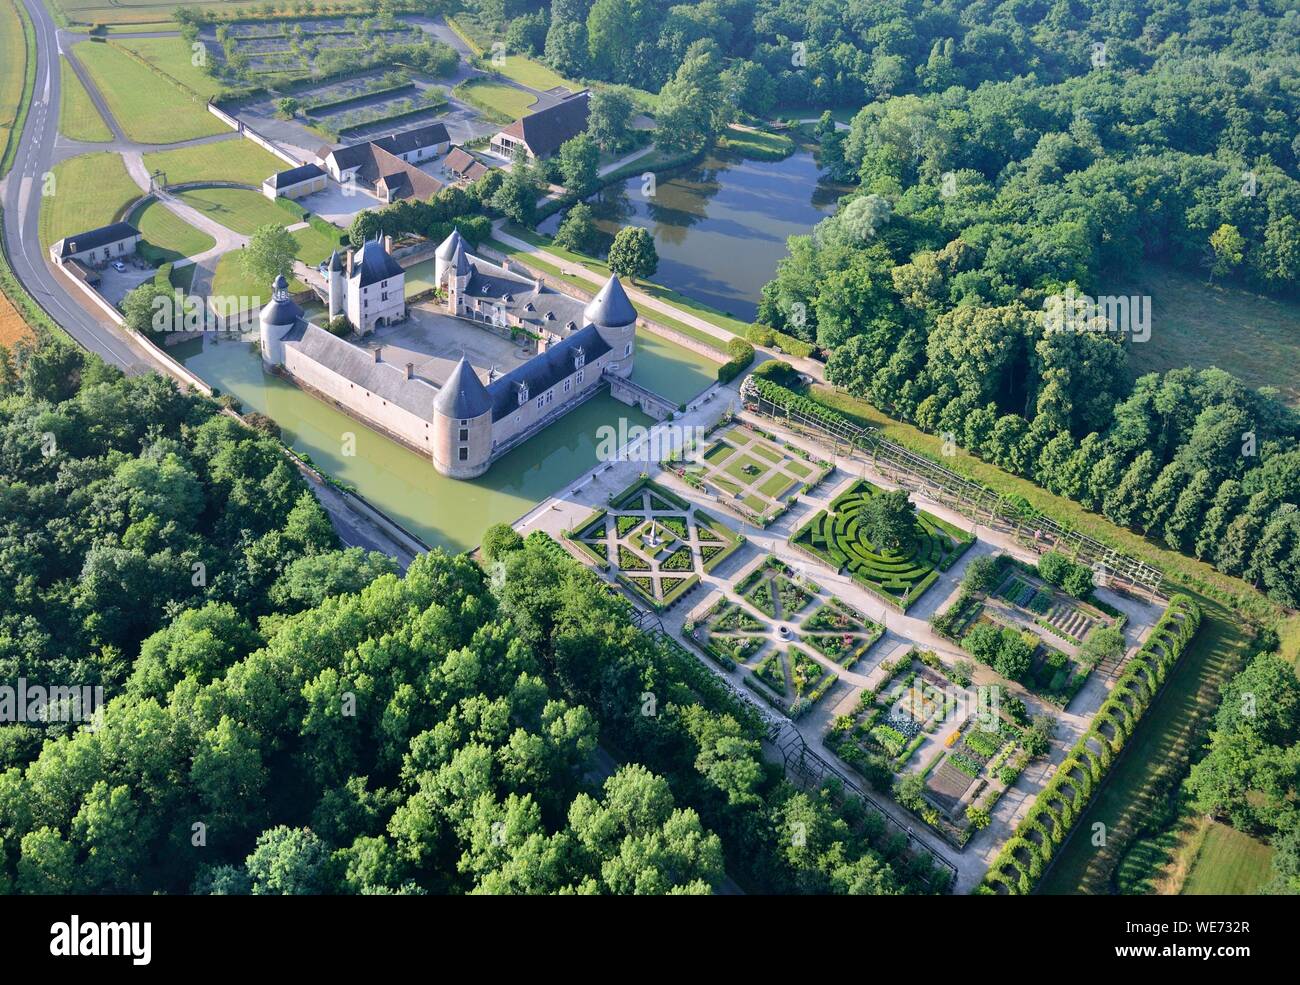 Frankreich, Loiret, Chilleurs Aux Bois, Schloss Chamerolles, obligatorische Angabe: Chateau de Chamerolles, im Besitz des Departement Loiret (Luftbild) Stockfoto